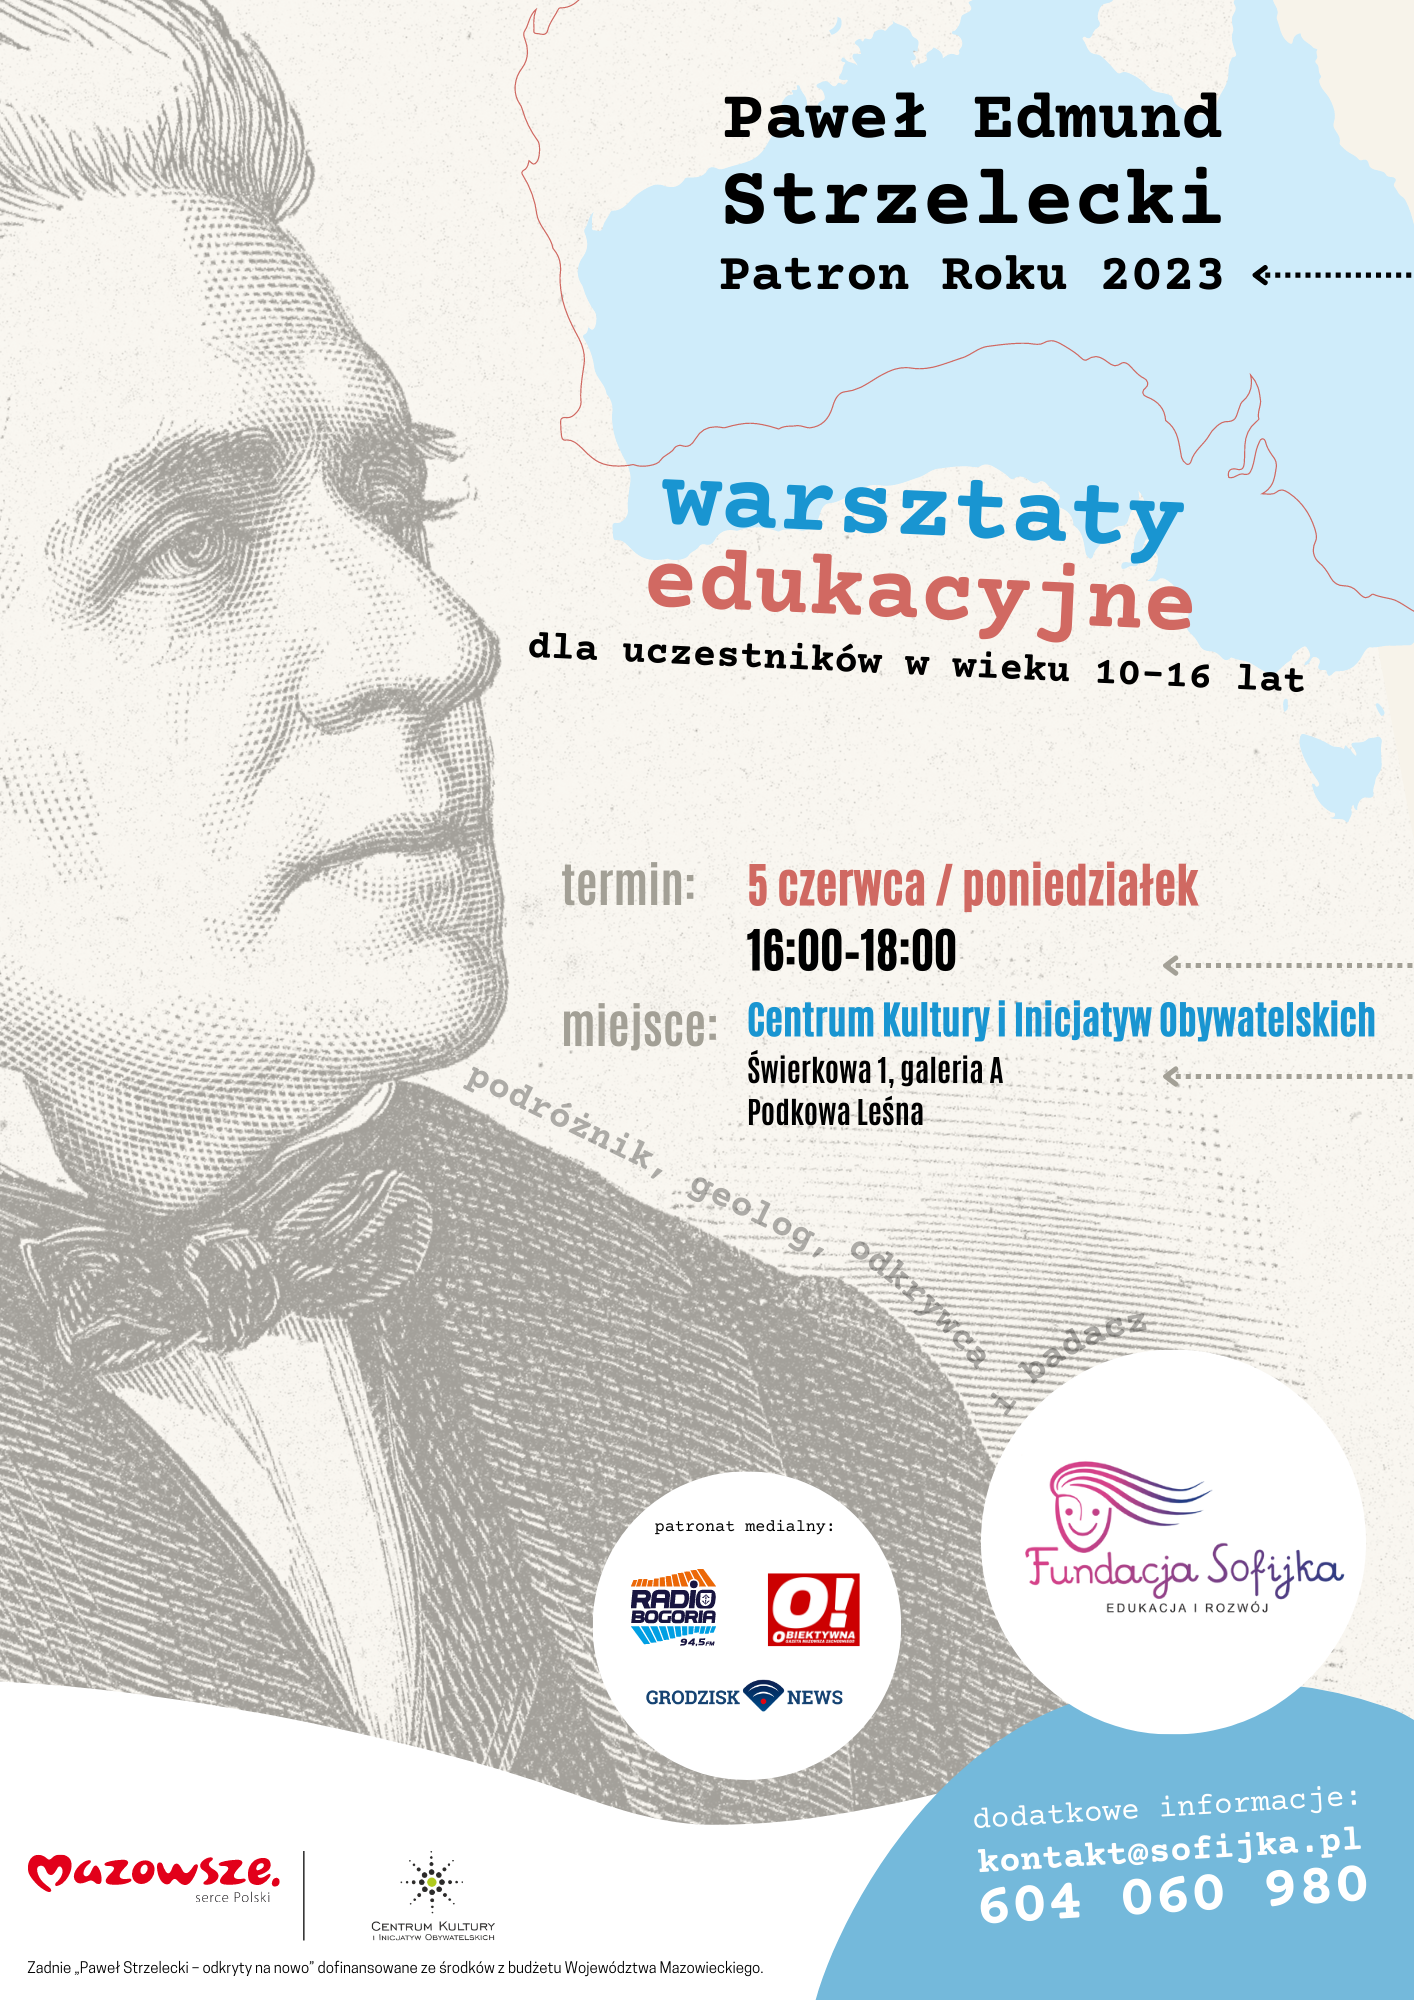 You are currently viewing Warsztaty edukacyjne – Paweł Edmund Strzelecki